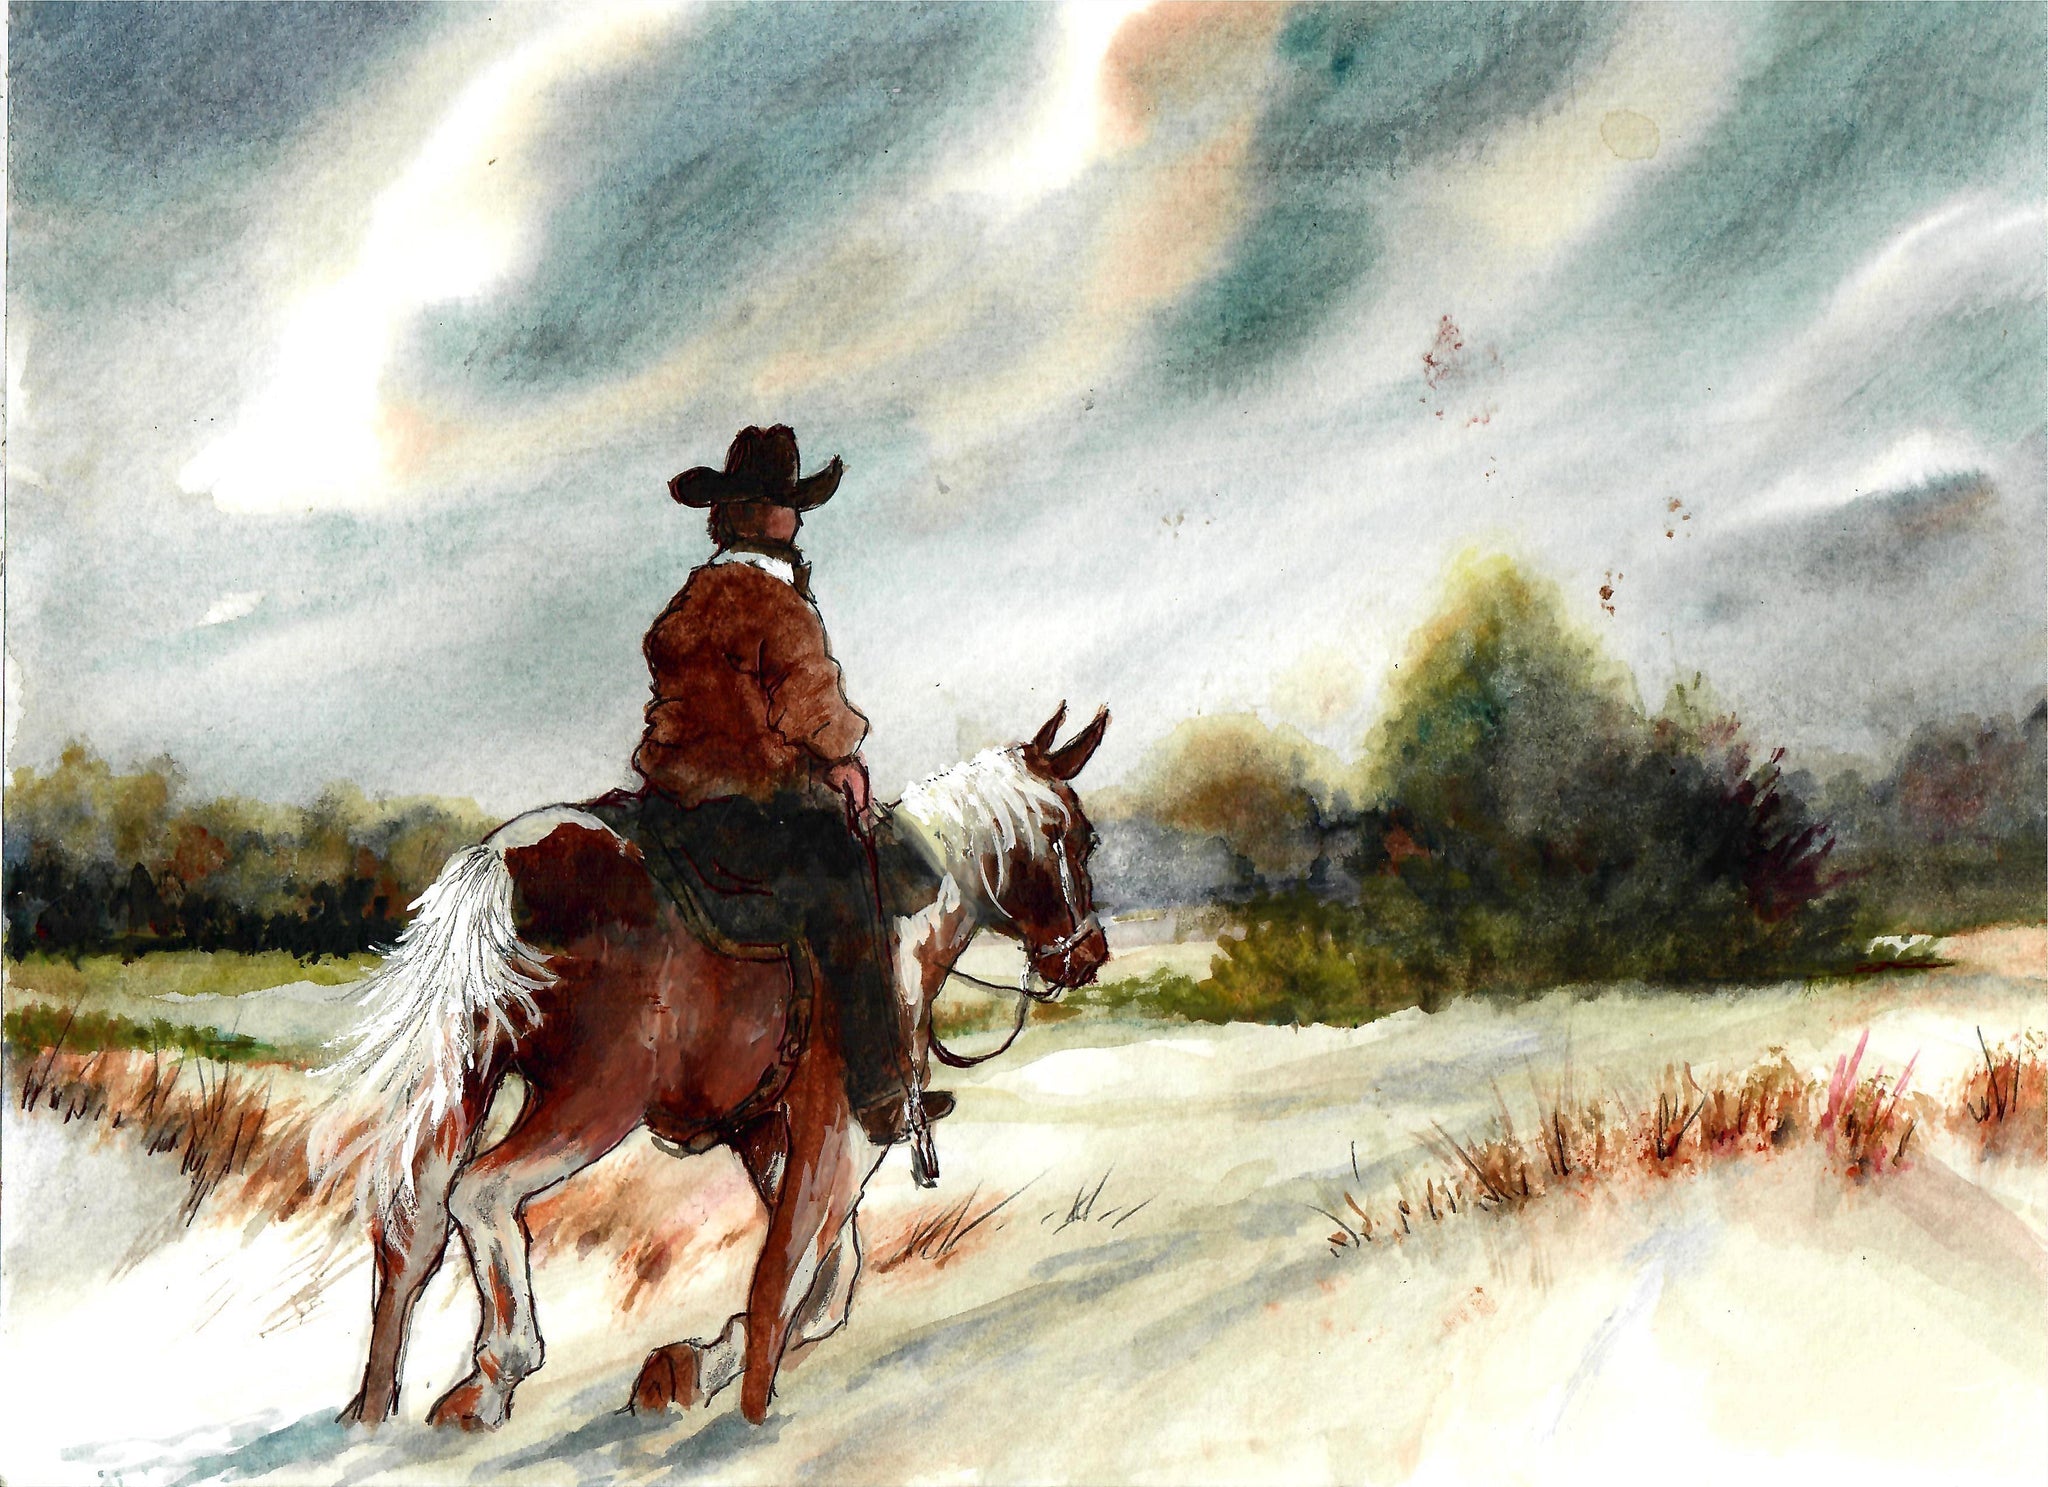 Western - Cowboy Riding Through A Snowy Field, Cowboy Art Print, Winter Western Scene